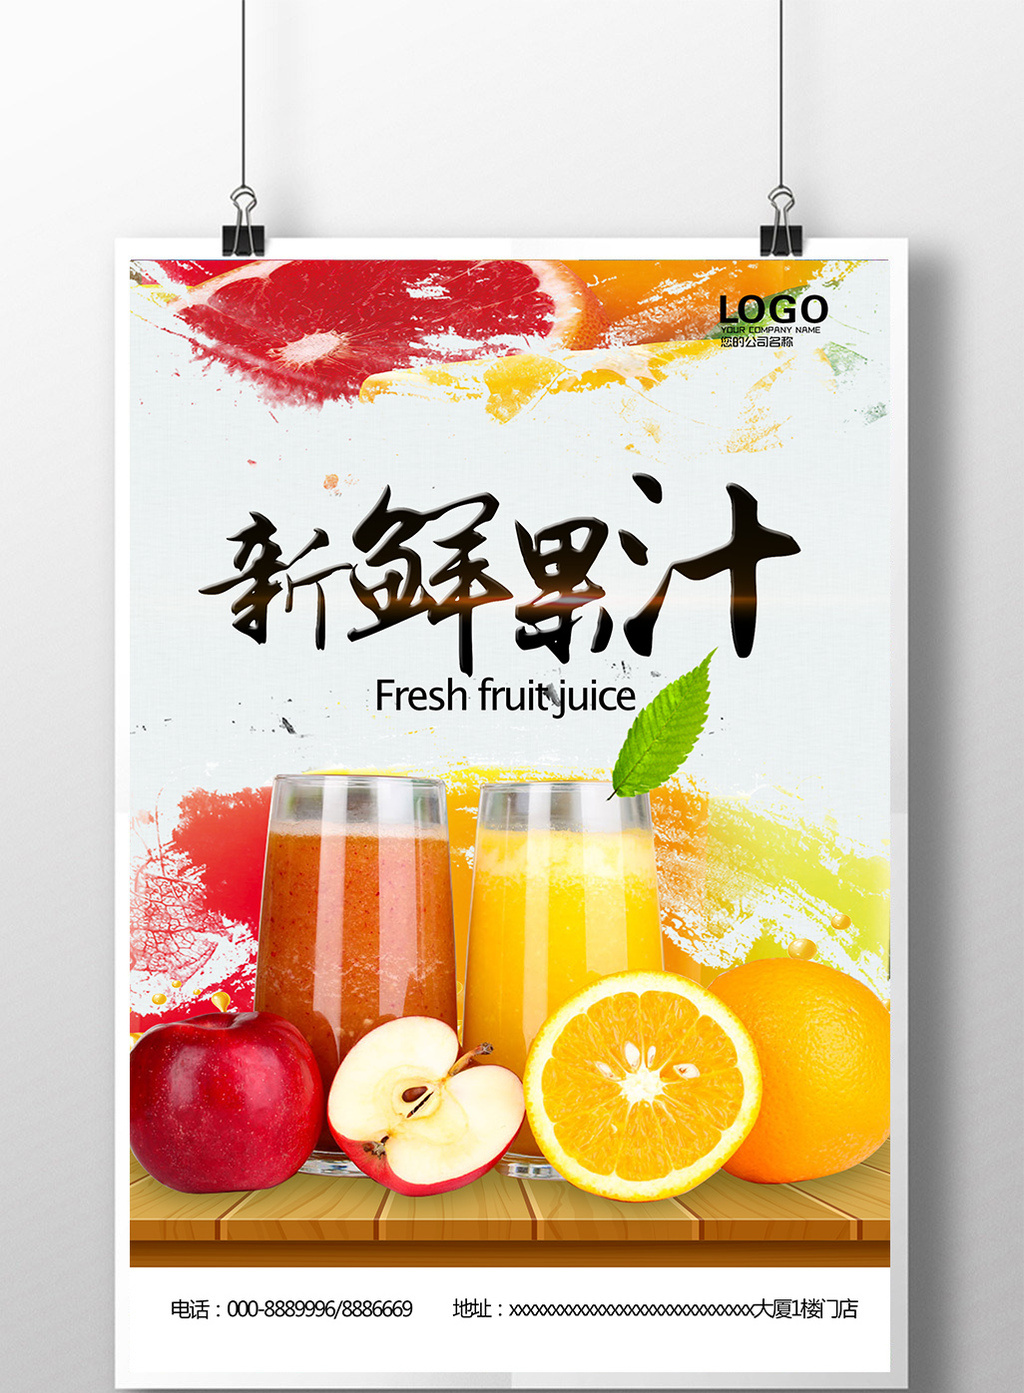 新鲜果汁鲜榨果汁海报下载模板免费下载 